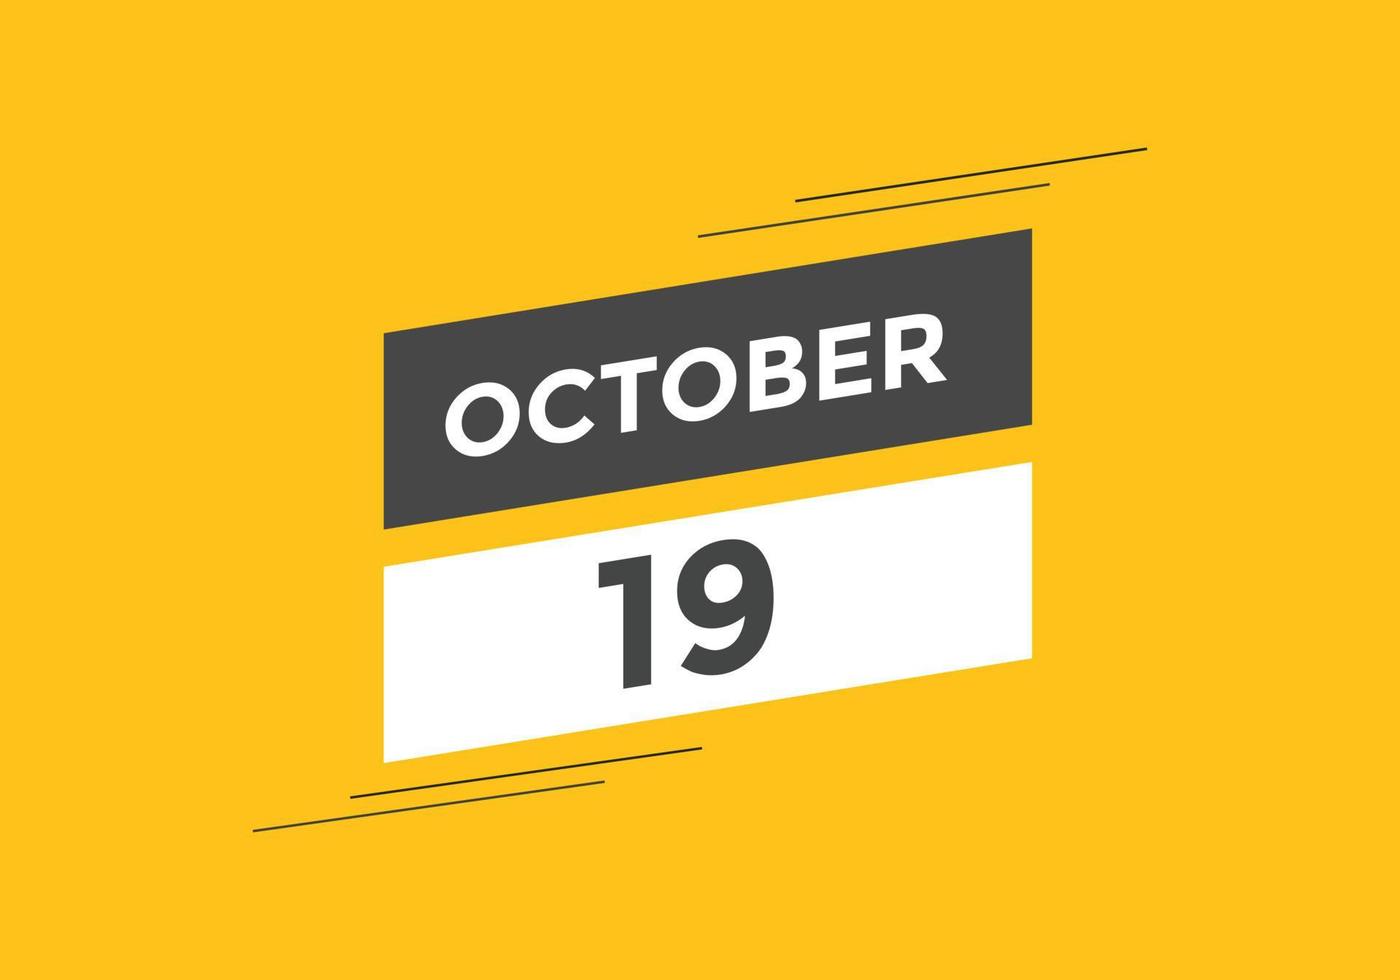 ottobre 19 calendario promemoria. 19 ottobre quotidiano calendario icona modello. calendario 19 ottobre icona design modello. vettore illustrazione